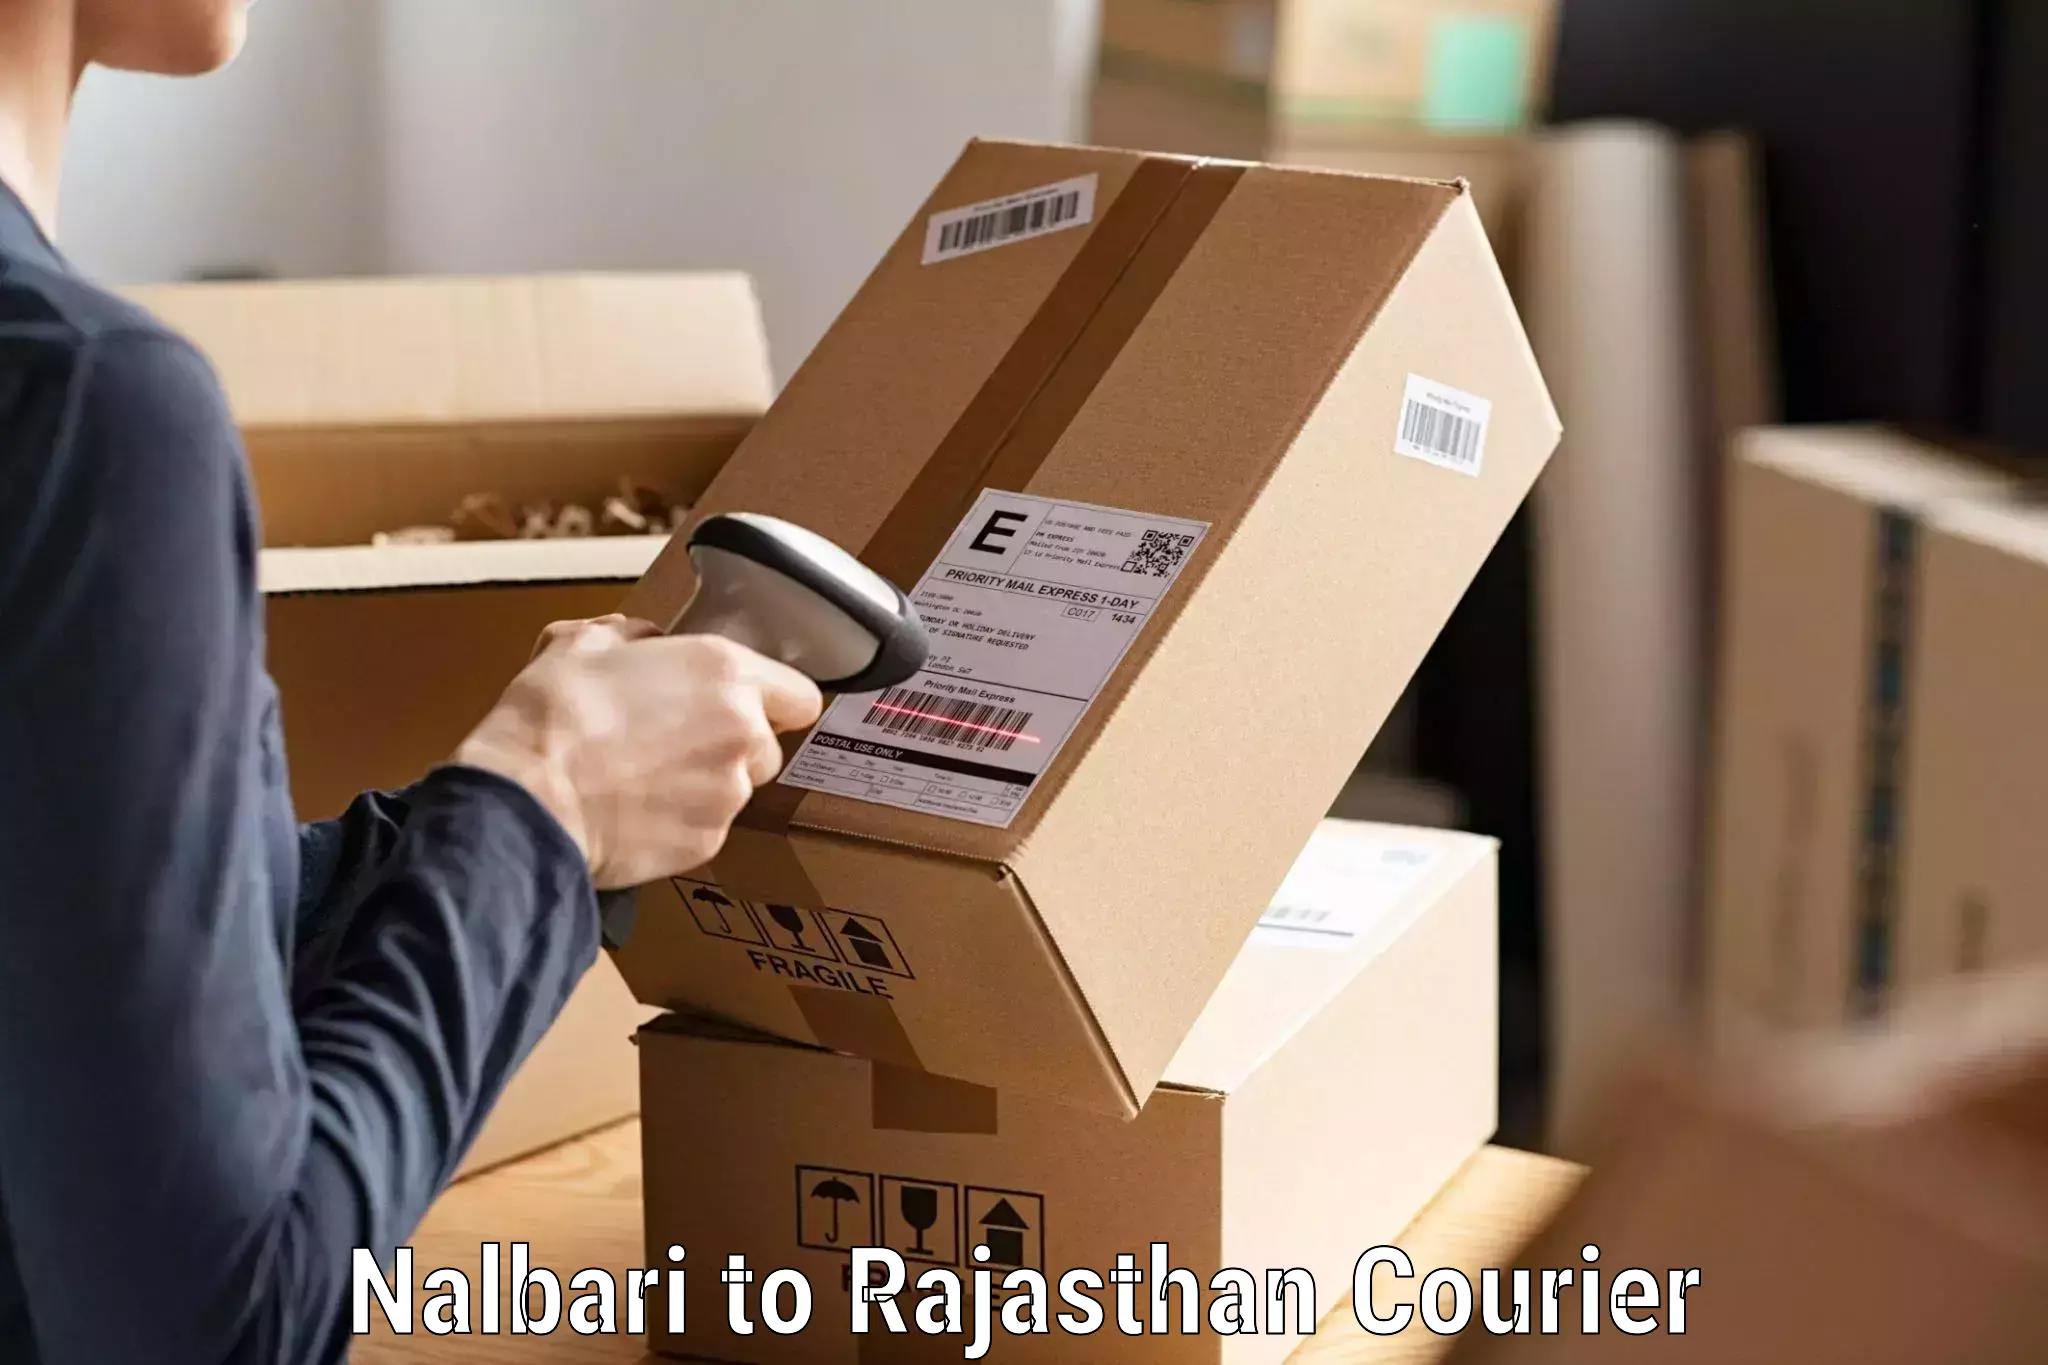 Premium courier services Nalbari to Sanchore